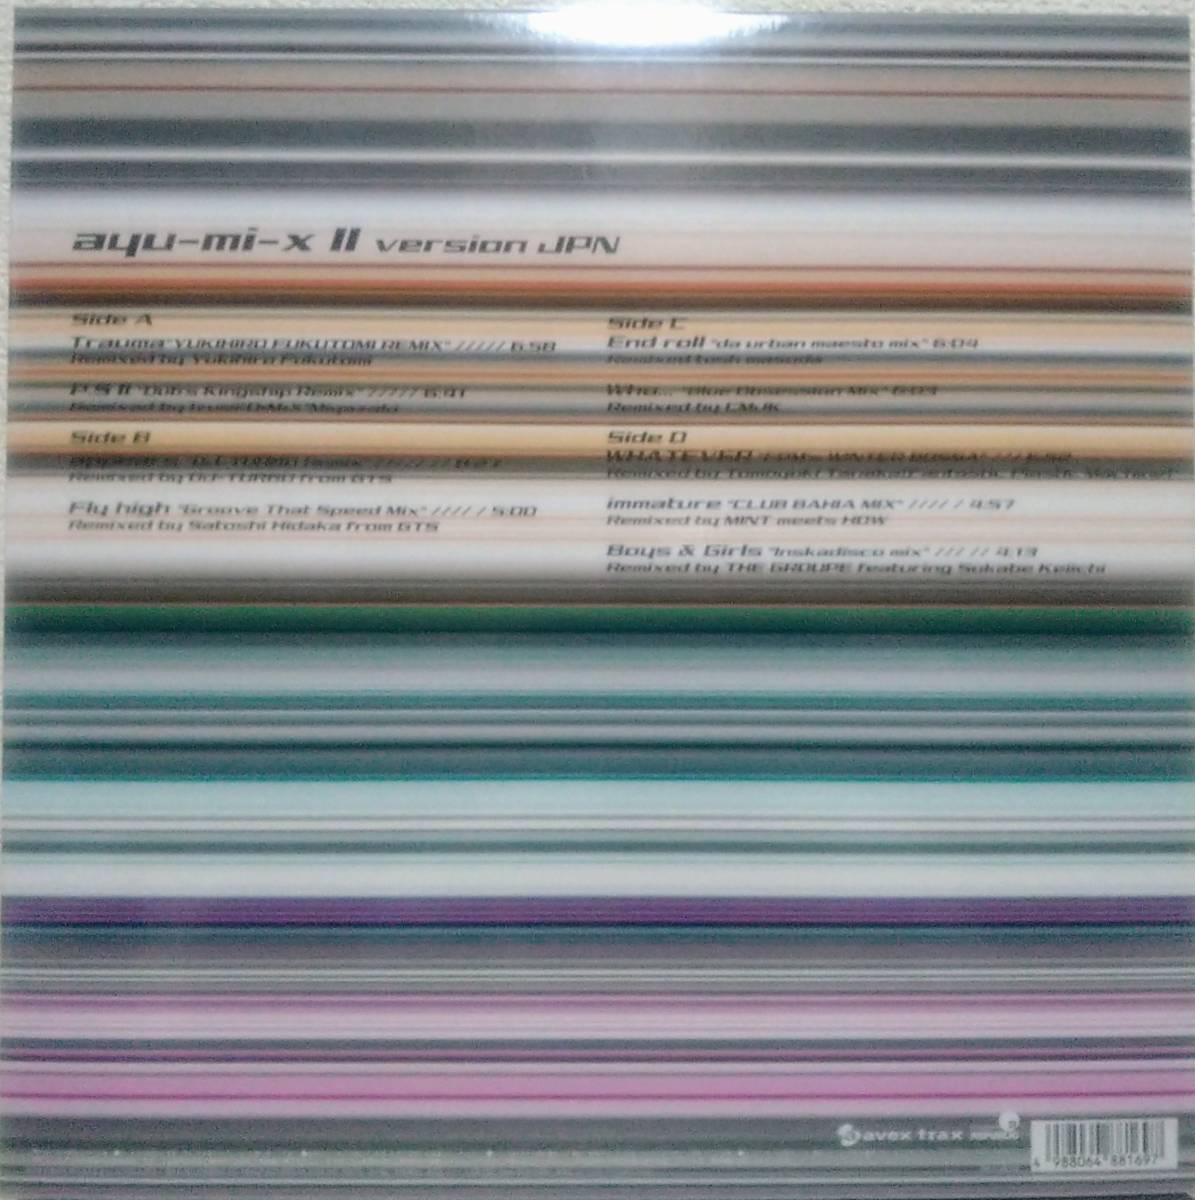 【LP×2 J-Pop】浜崎あゆみ（Ayumi Hamasaki）「Ayu-mi-x II Version JPN 」JPN盤_裏ジャケット